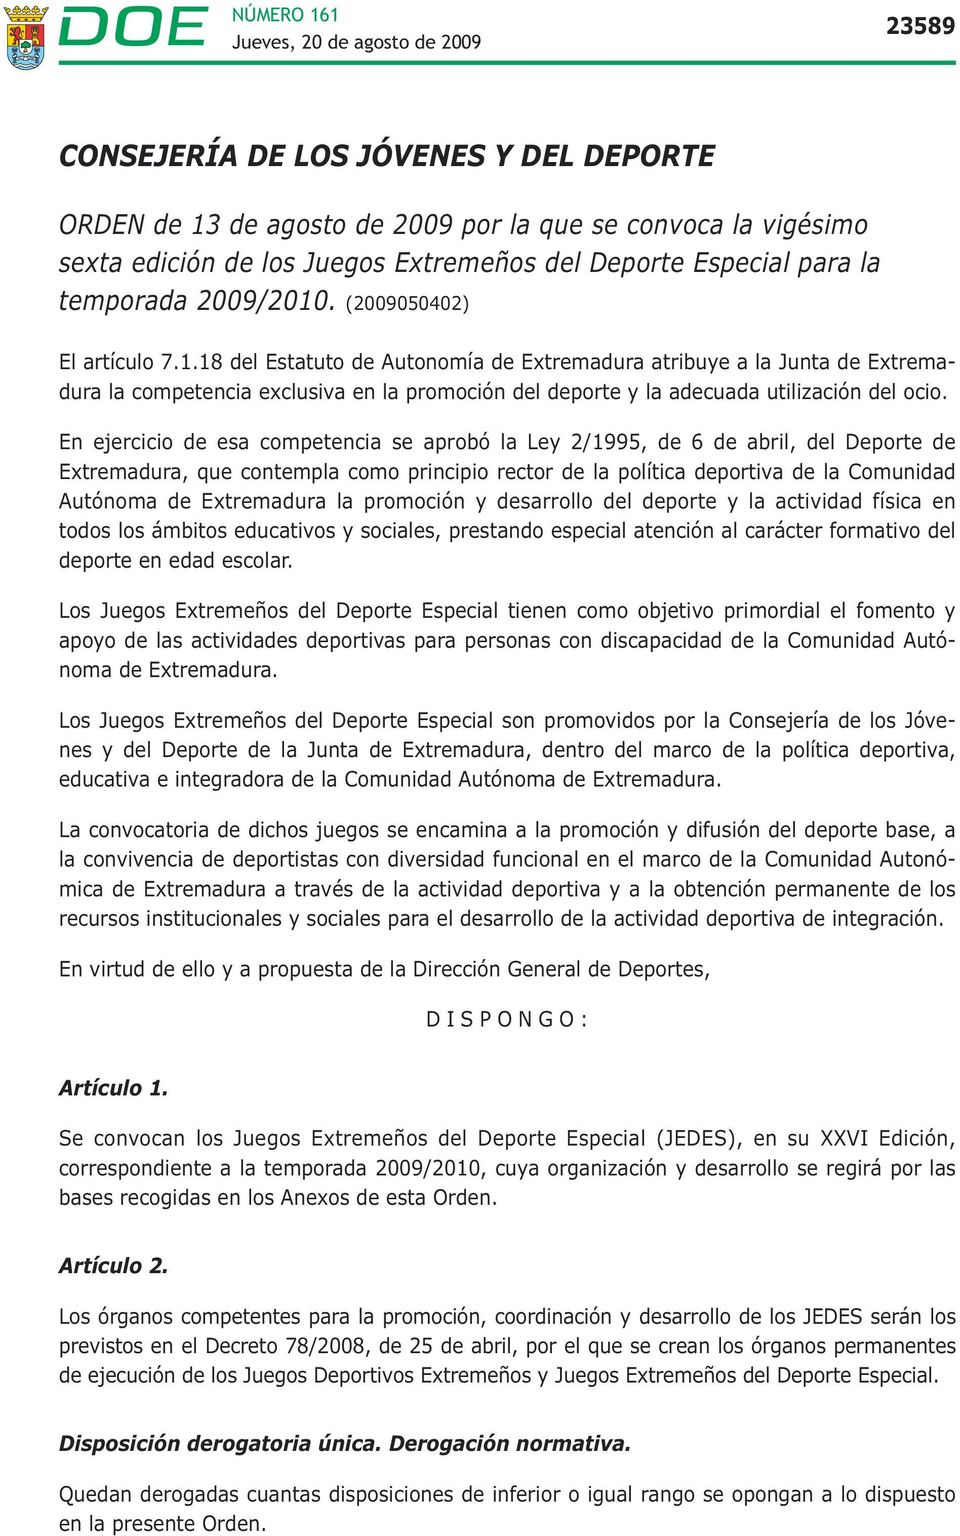 En ejercicio de esa competencia se aprobó la Ley 2/1995, de 6 de abril, del Deporte de Extremadura, que contempla como principio rector de la política deportiva de la Comunidad Autónoma de